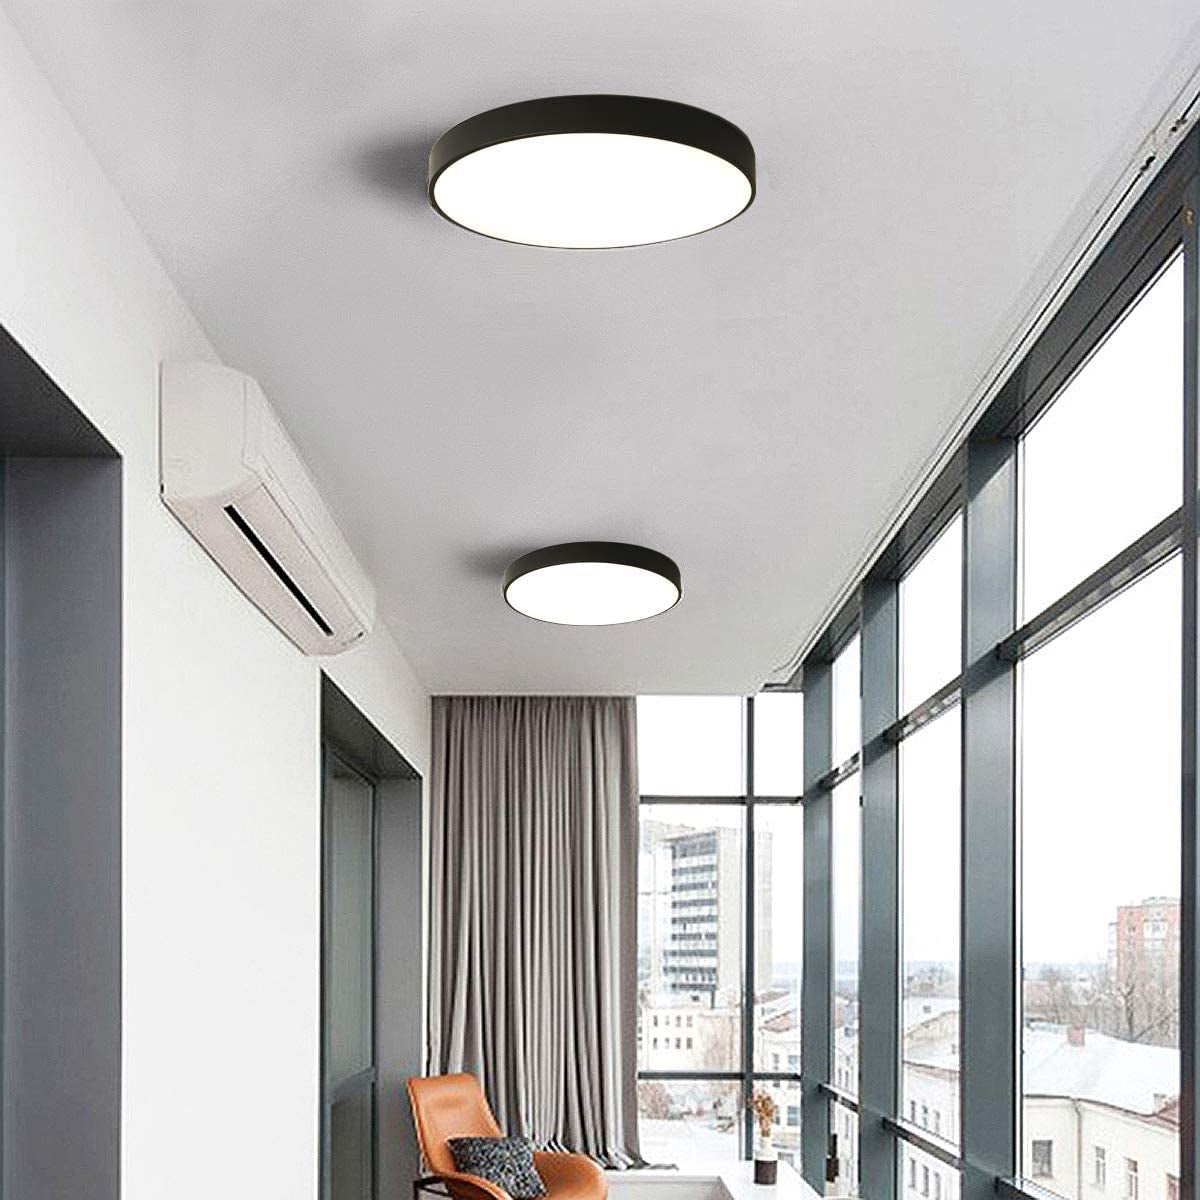 LED Ceiling Lights, 24W Flush Mount Ceiling Light,12-Inch Modern Ceiling Lamp